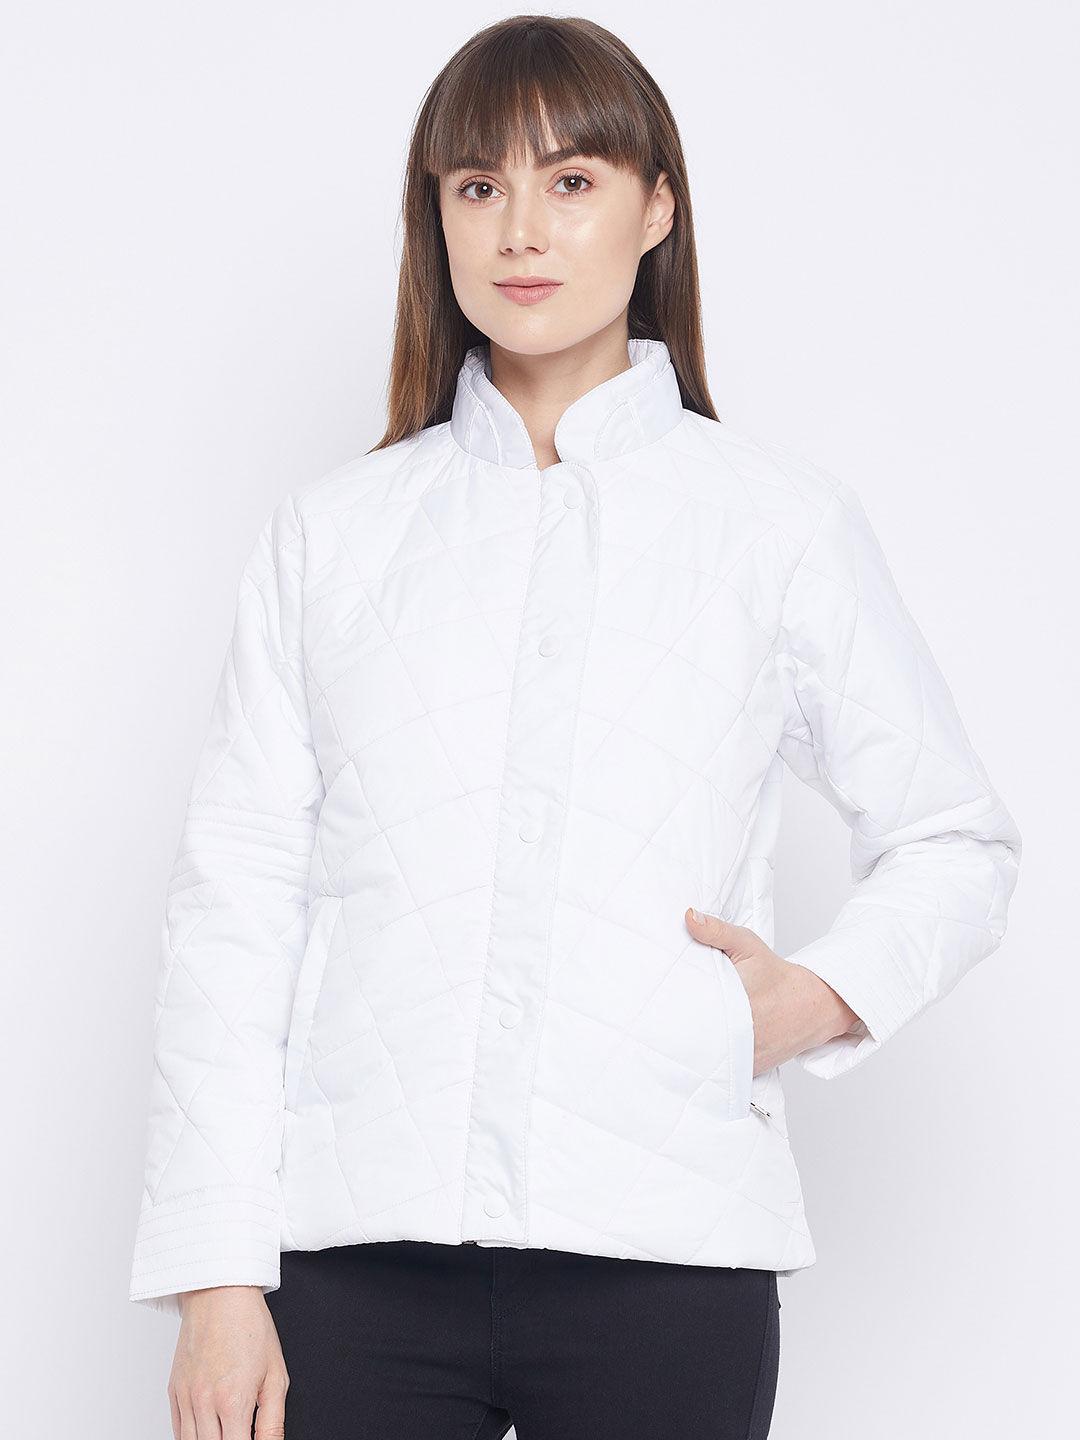 women's-white-full-sleeve-mock-neck-jacket